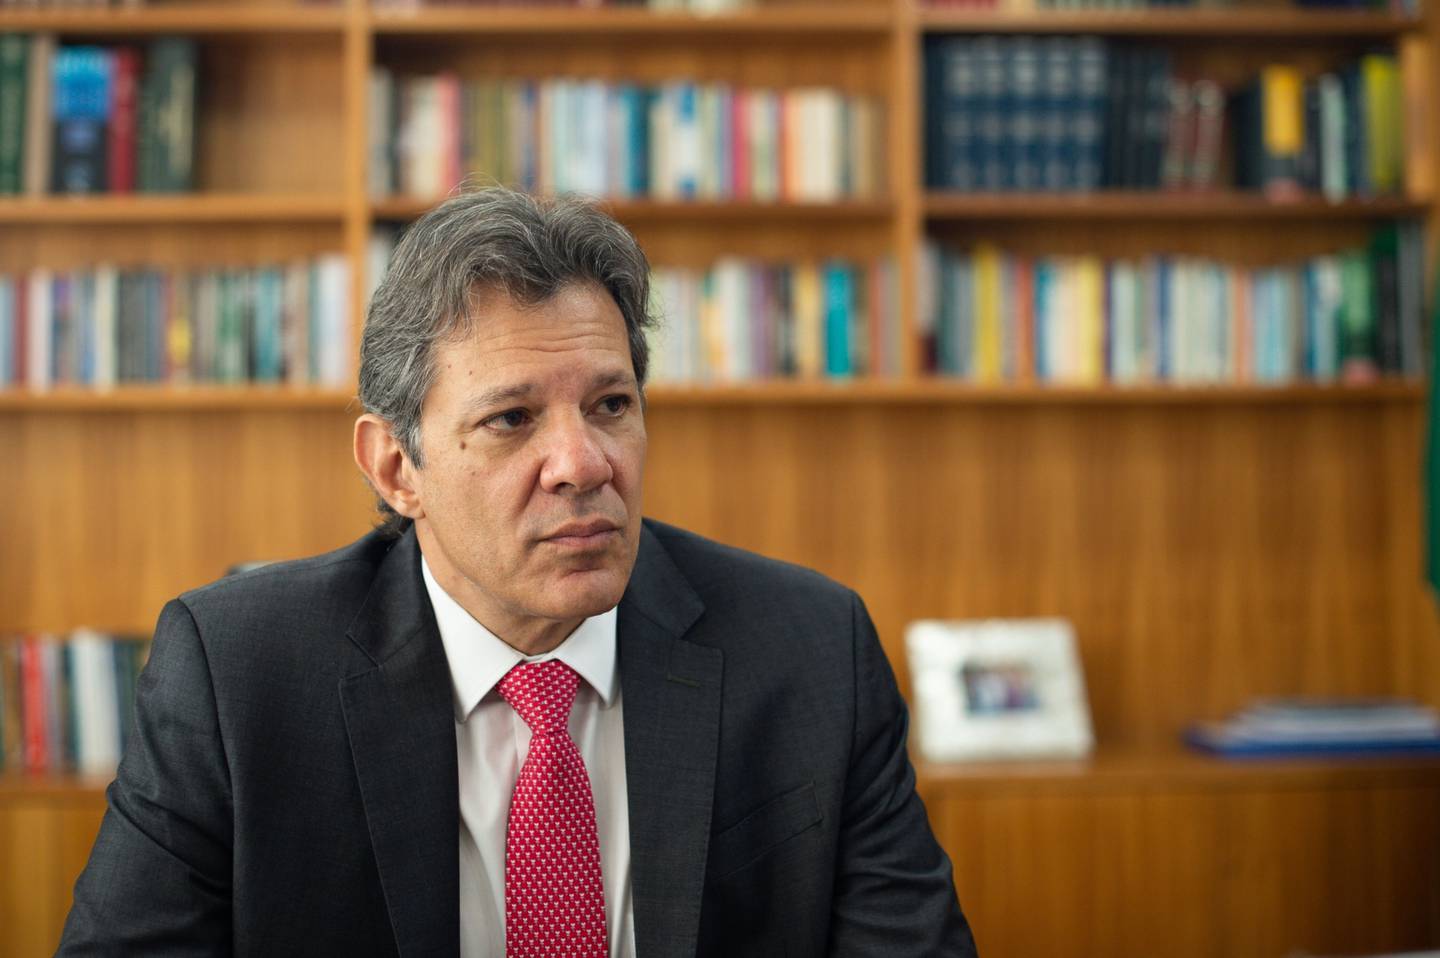 Fernando Haddad durante una entrevista en Brasilia, el 4 de abril. Fotógrafa: Andressa Anholete/Bloomberg